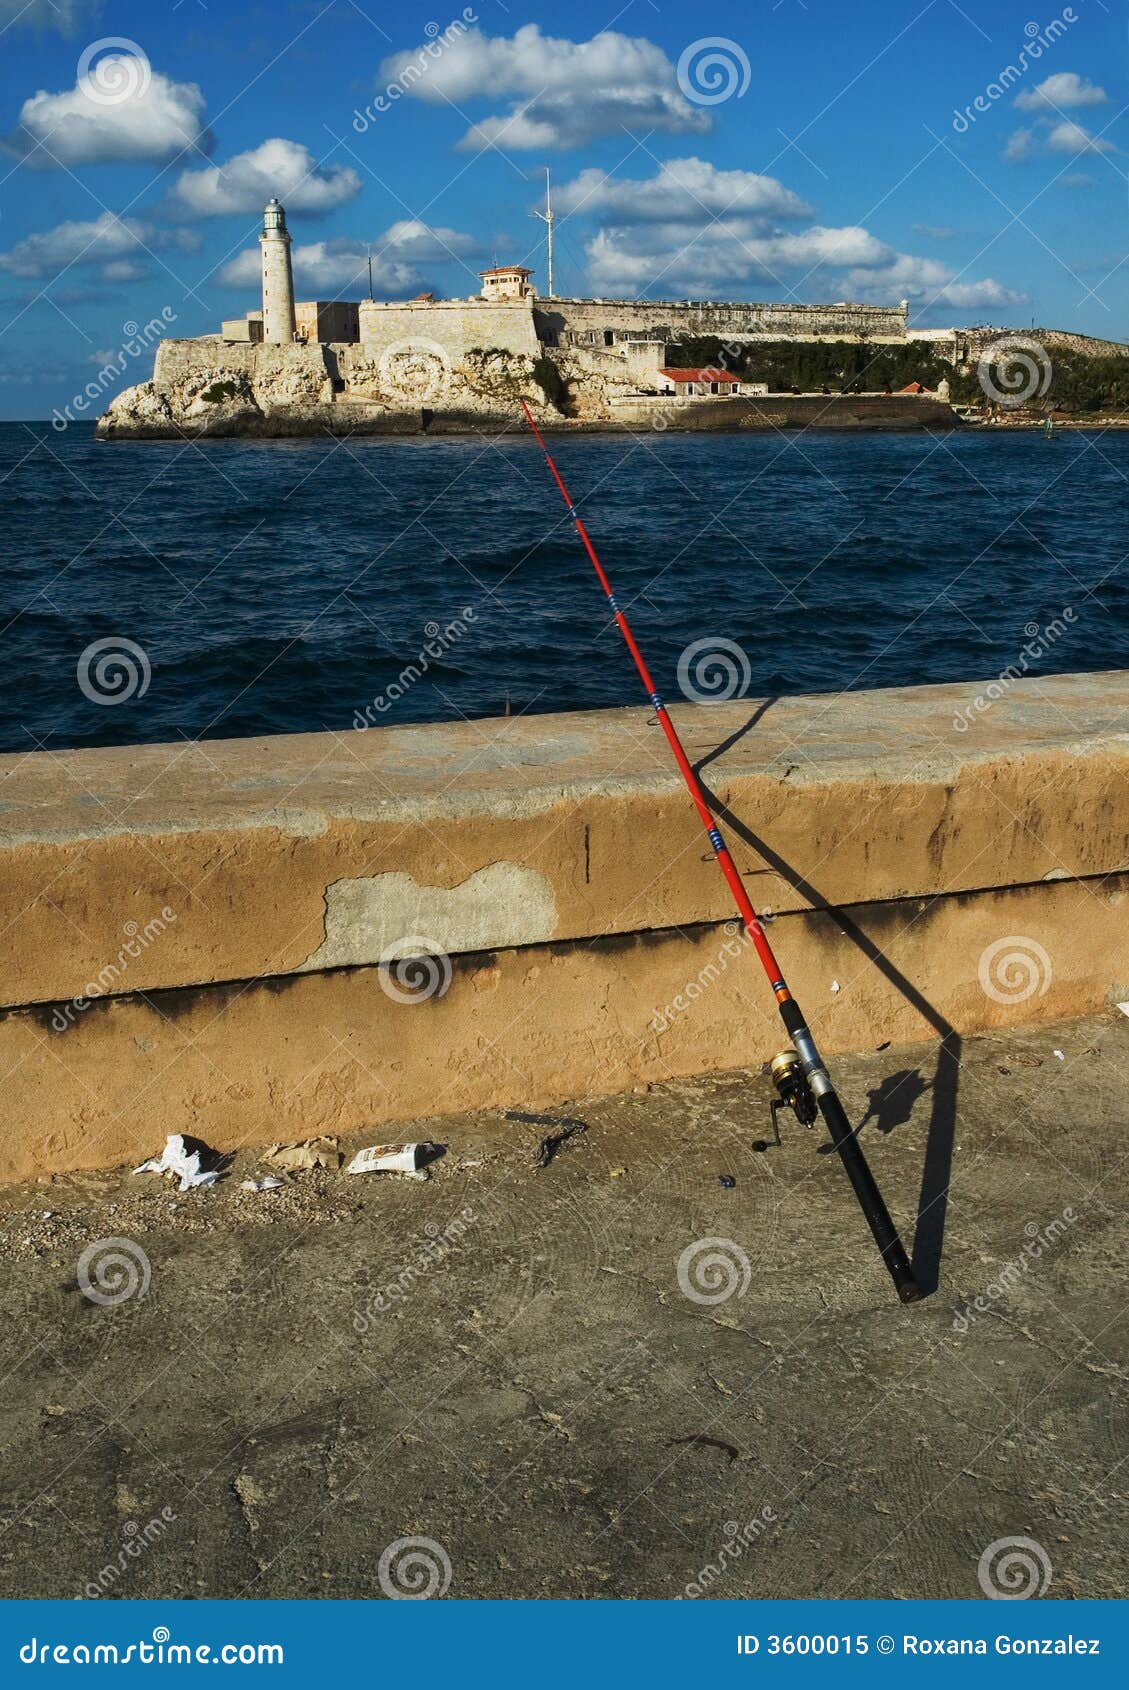 fishing on habana malecon